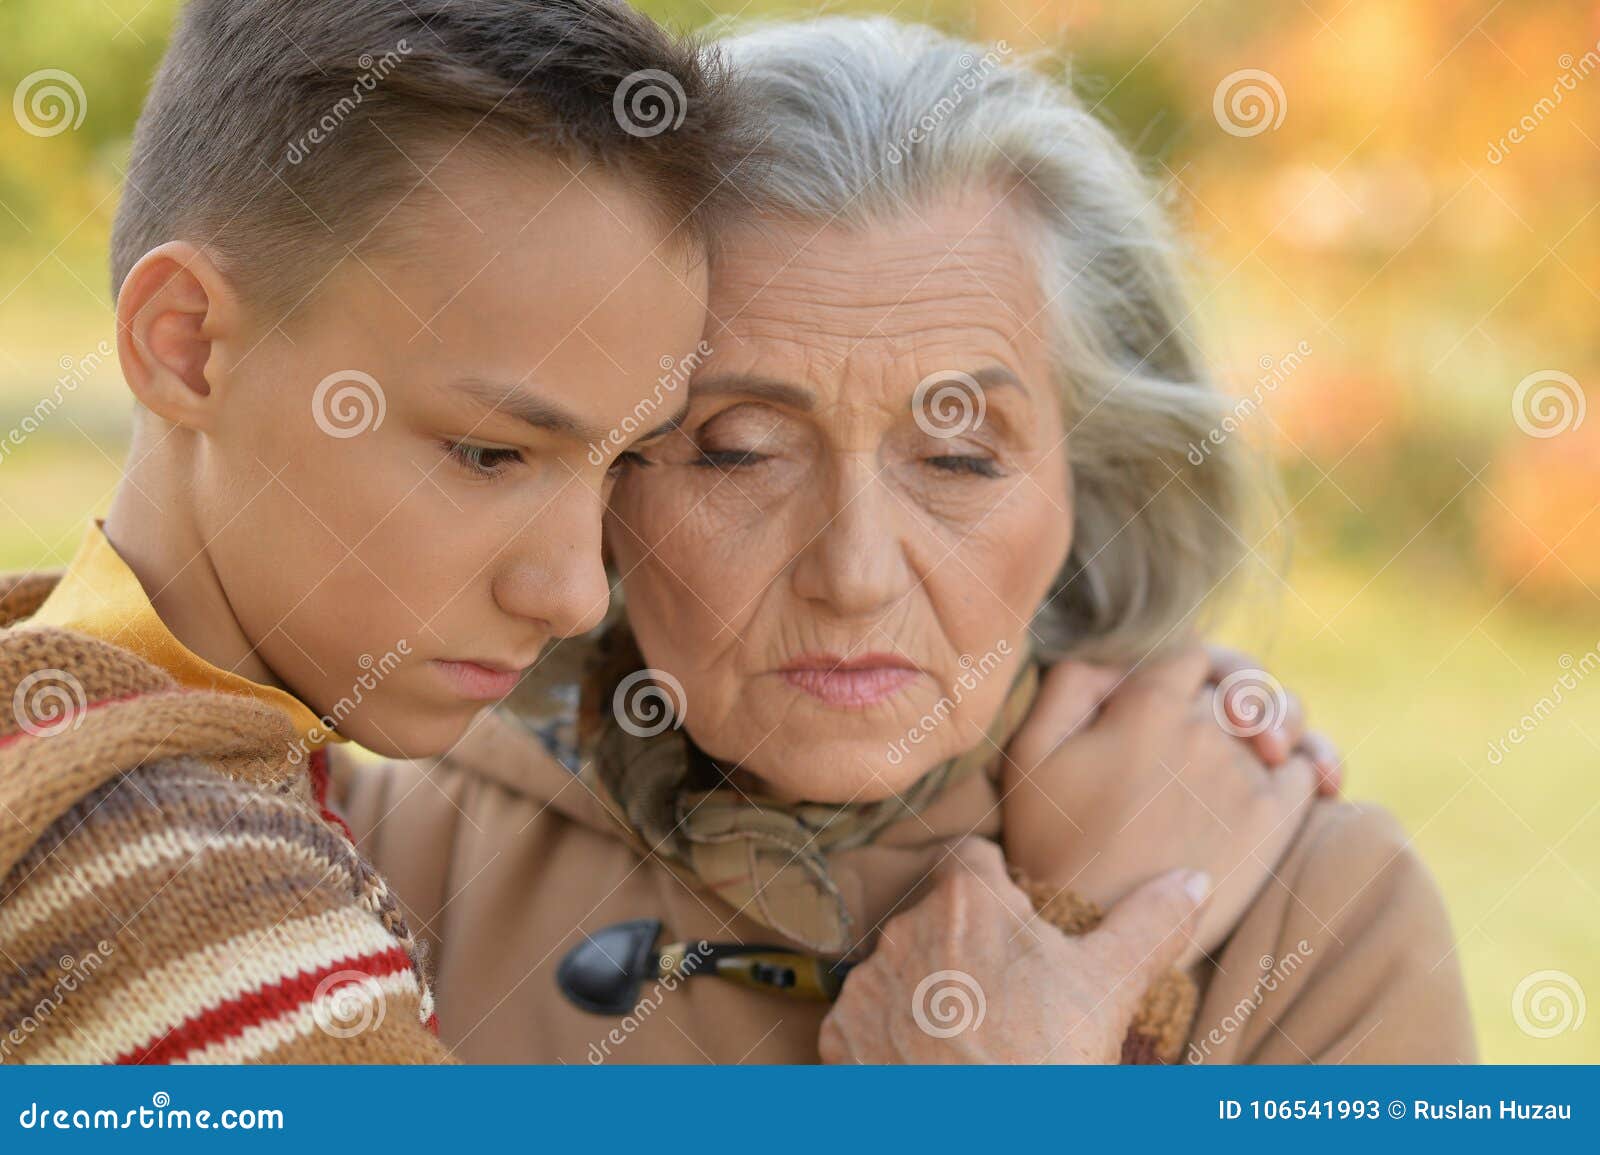 бабушку трахают дети фото 2